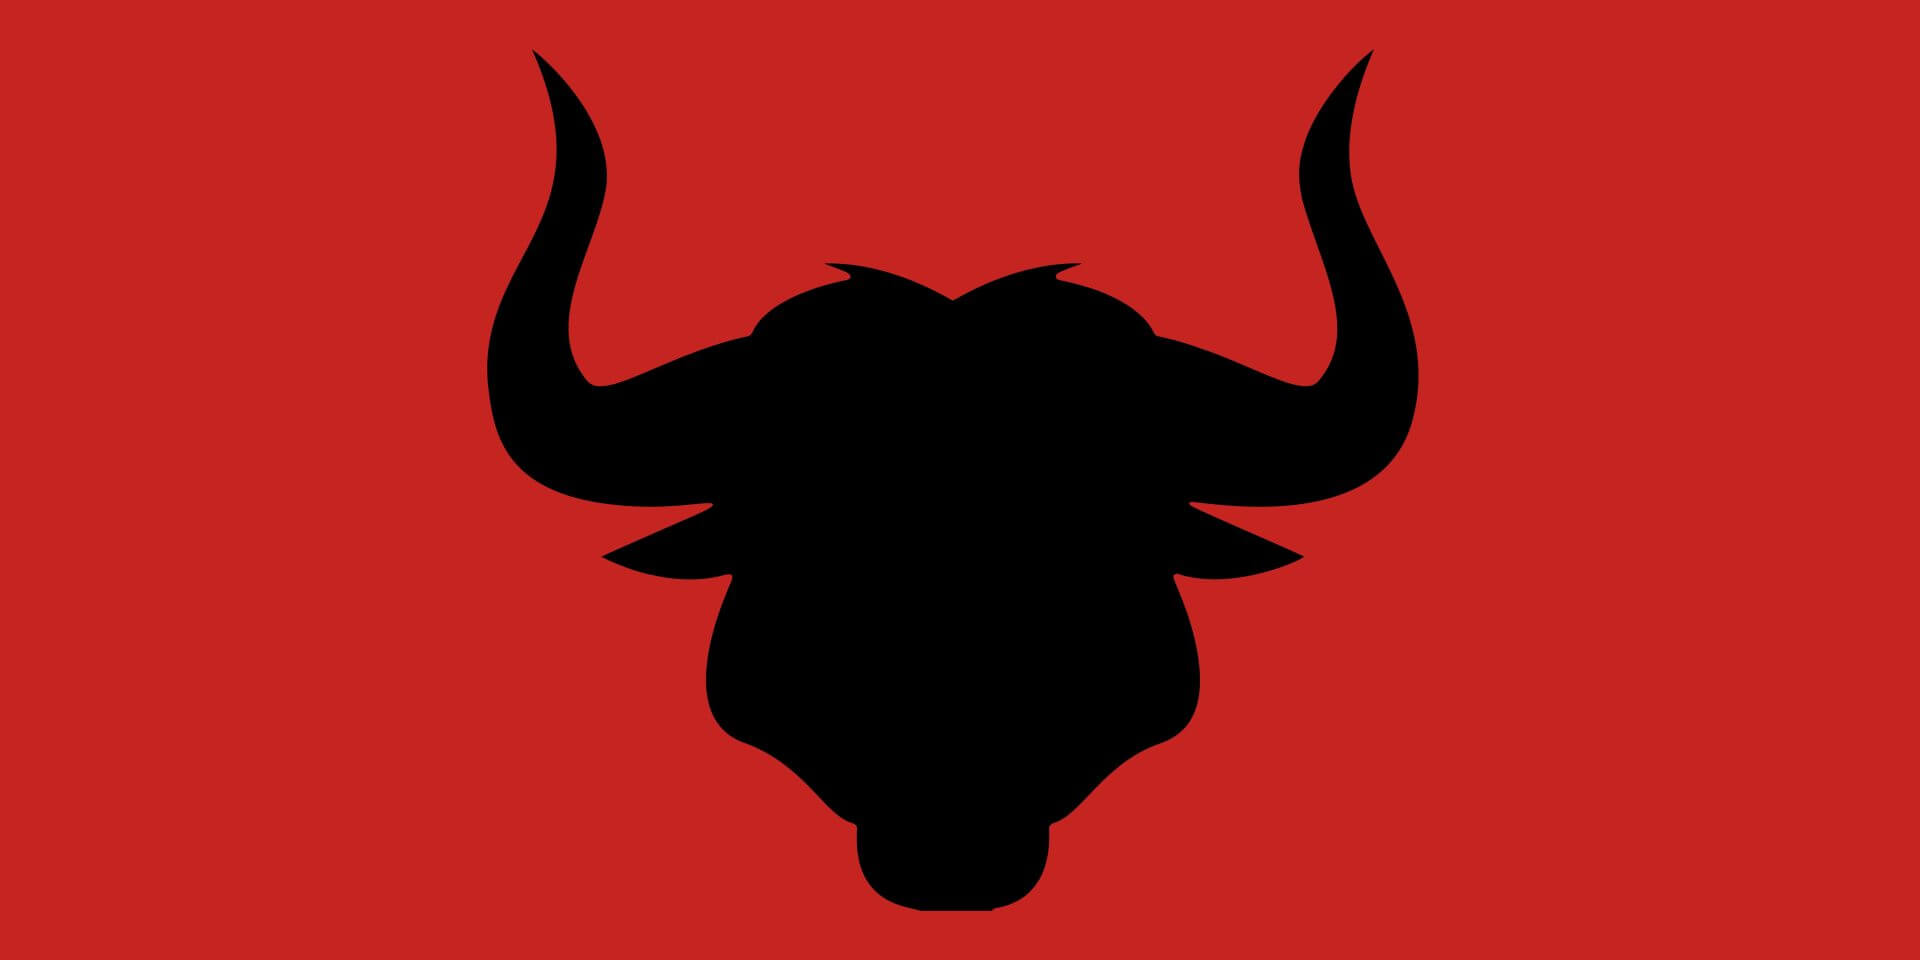 Instituto Hispánico de Murcia - Los toros en el idioma español